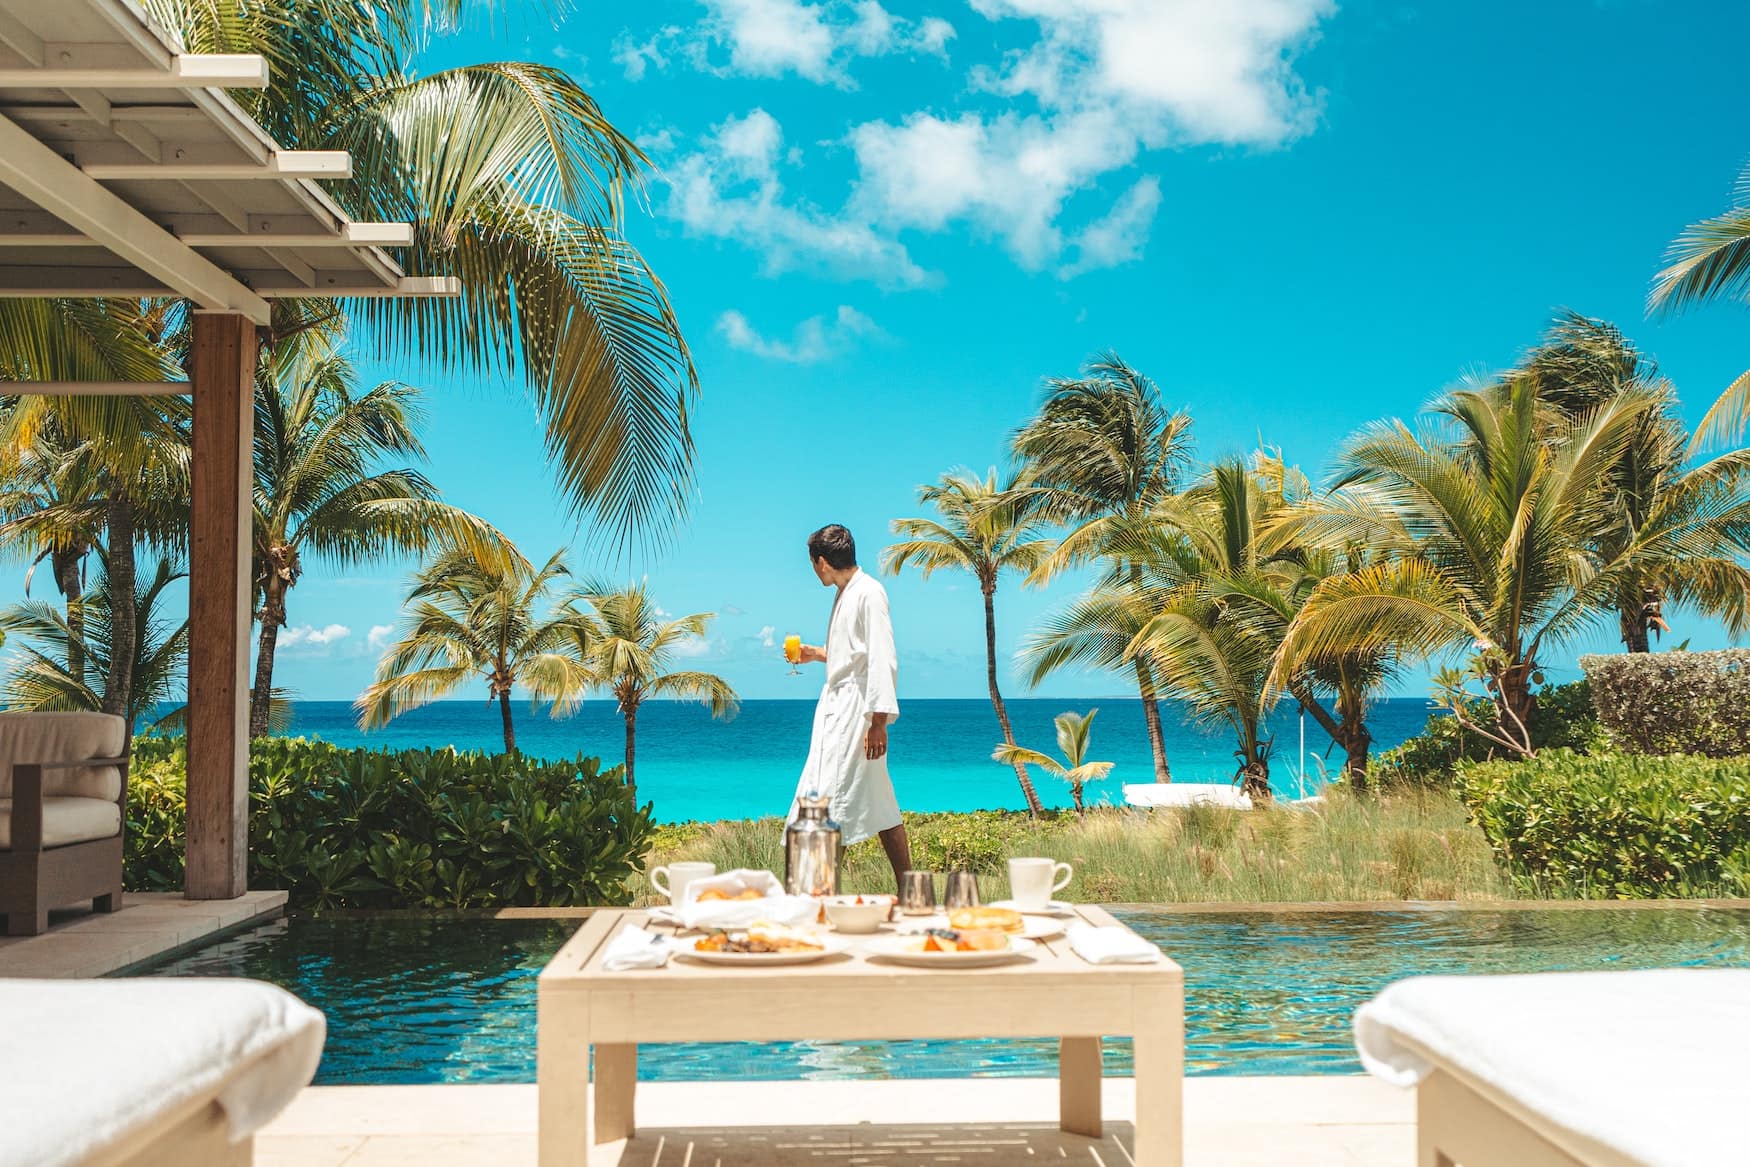 Mann in Bademantel spaziert durch karibisches Luxushotel